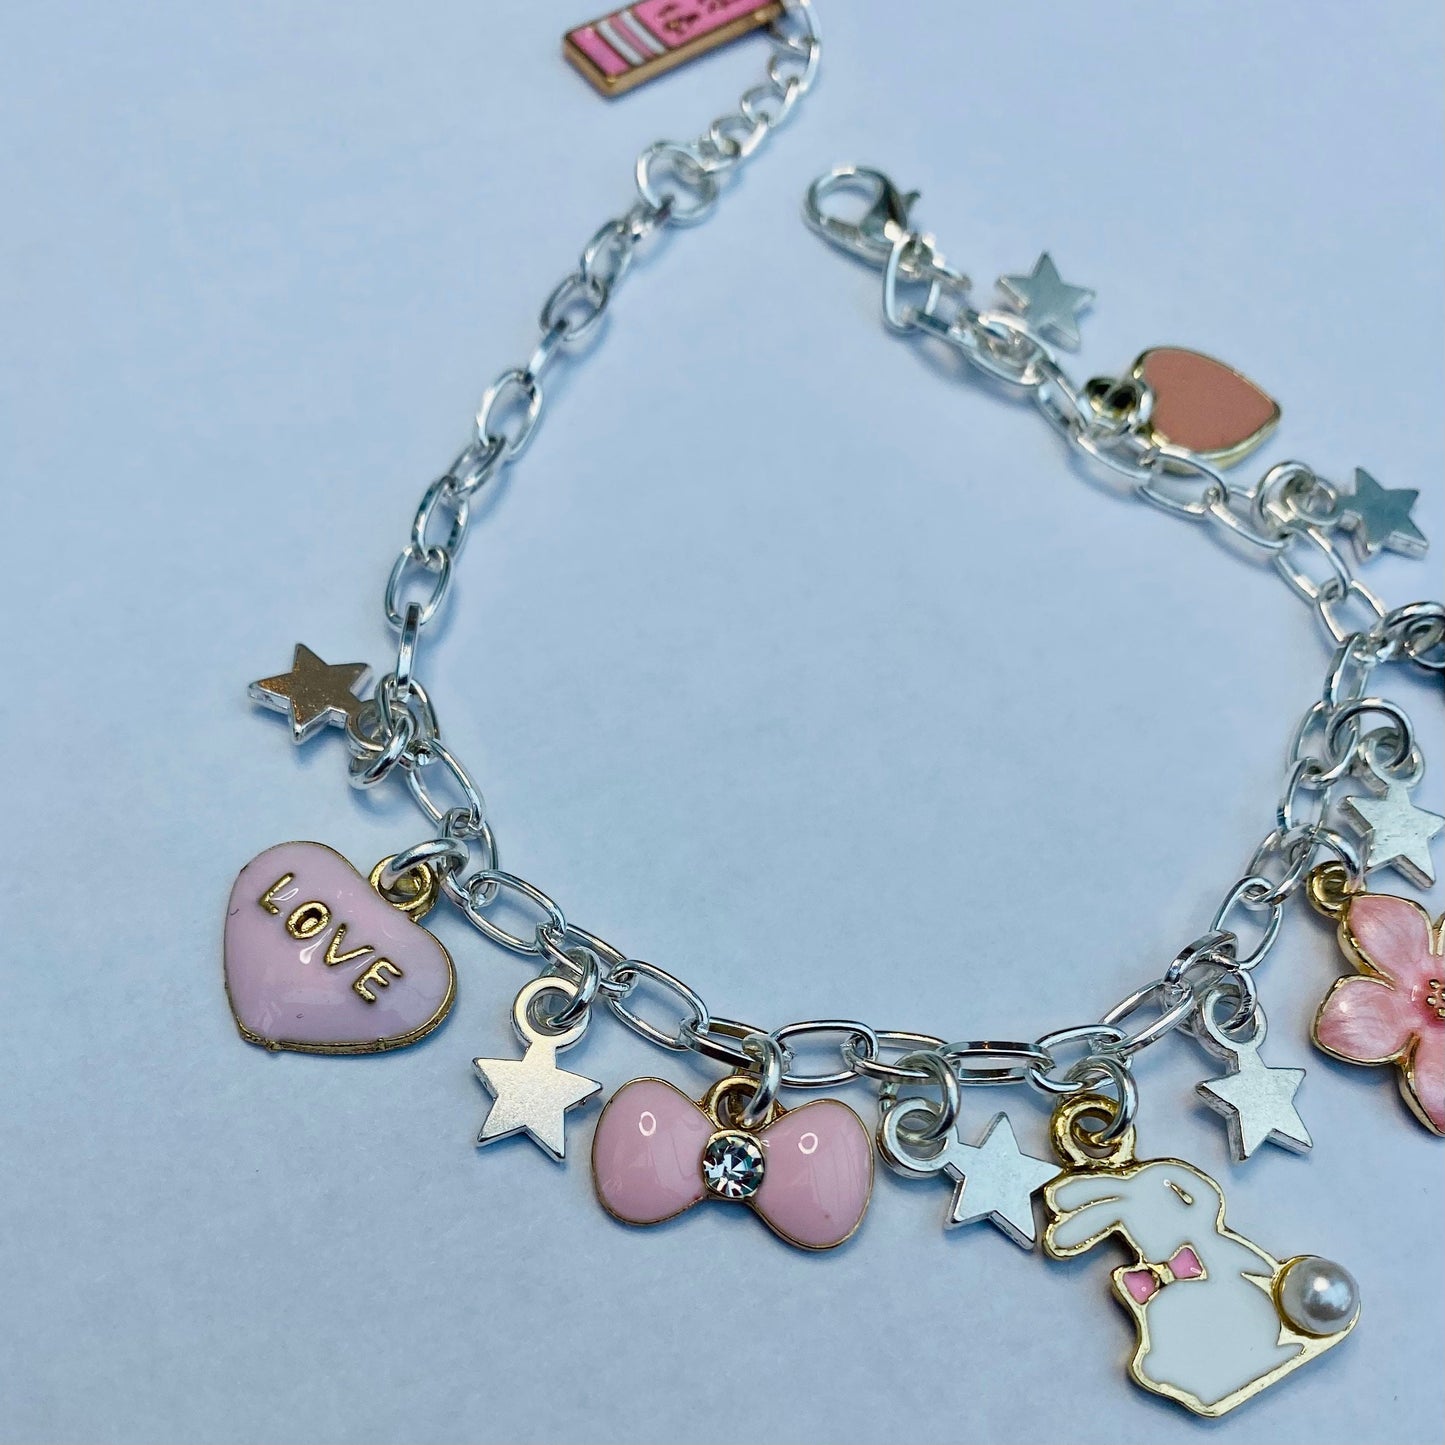 Boku no My Hero Academia Charm Bracelet Anime Bangle Jewelry Gift Cosplay  Prop | eBay